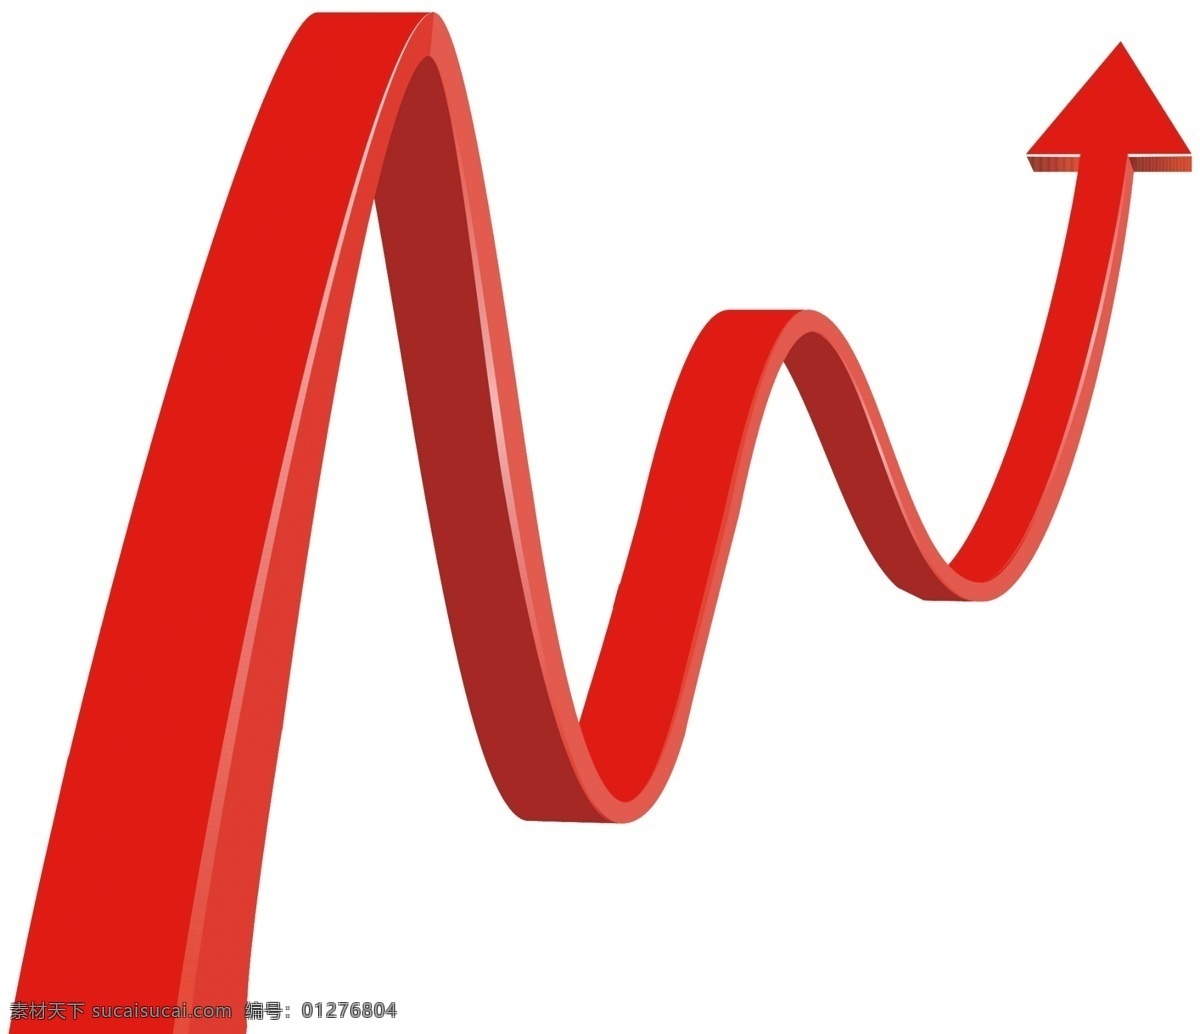 上涨 向上 指数 股票 曲线 箭头 区间 红色